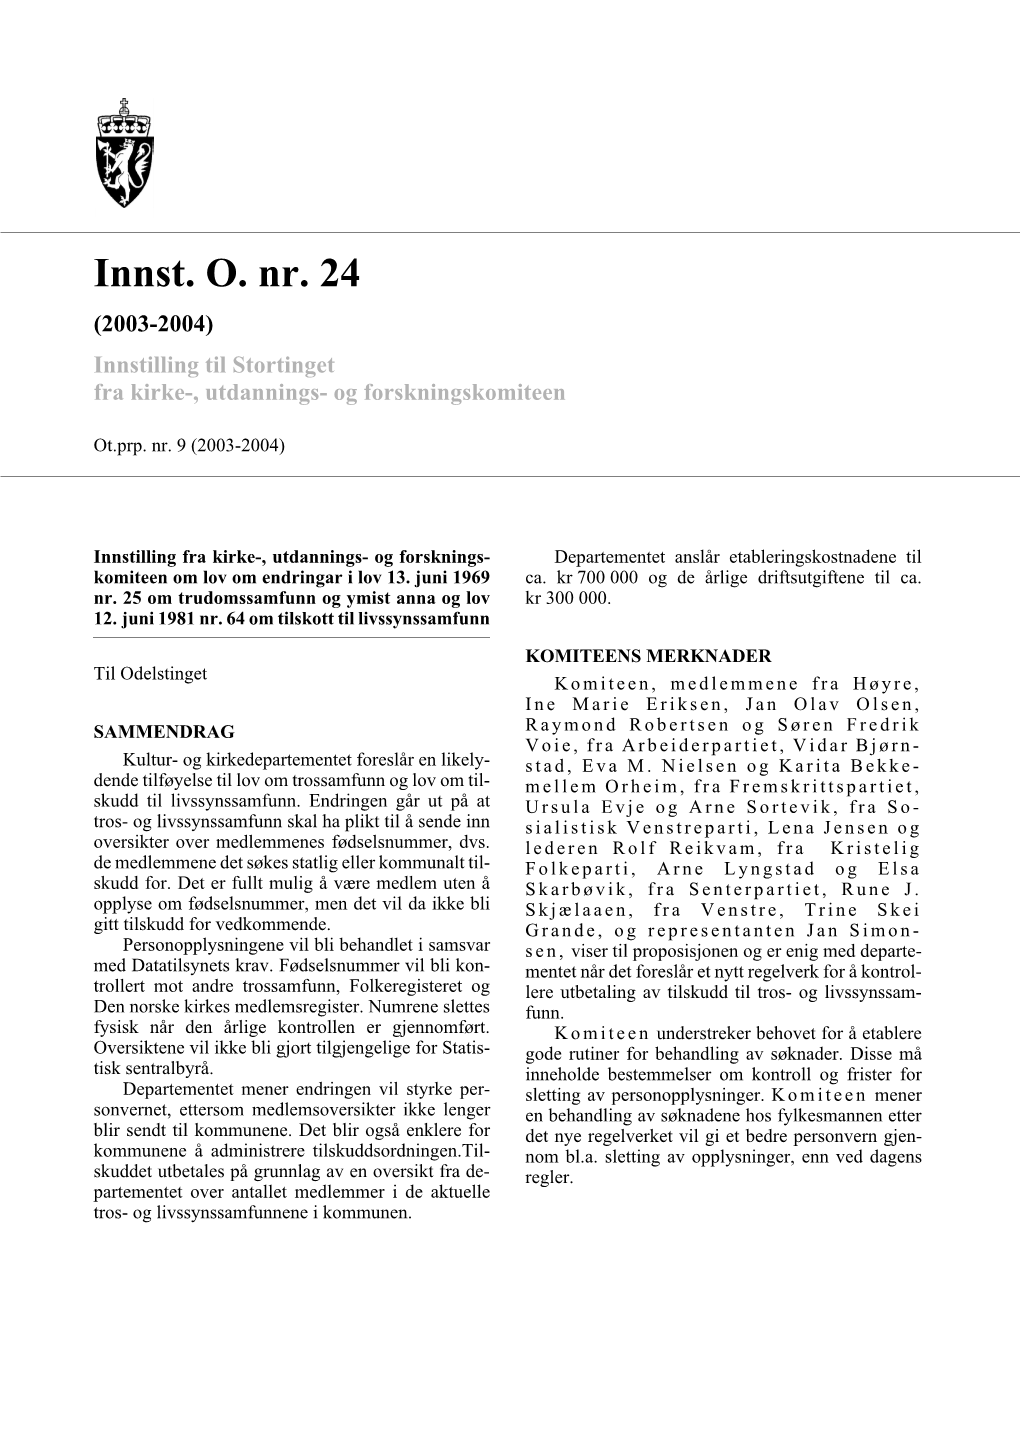 Innst. O. Nr. 24 (2003-2004) Innstilling Til Stortinget Fra Kirke-, Utdannings- Og Forskningskomiteen